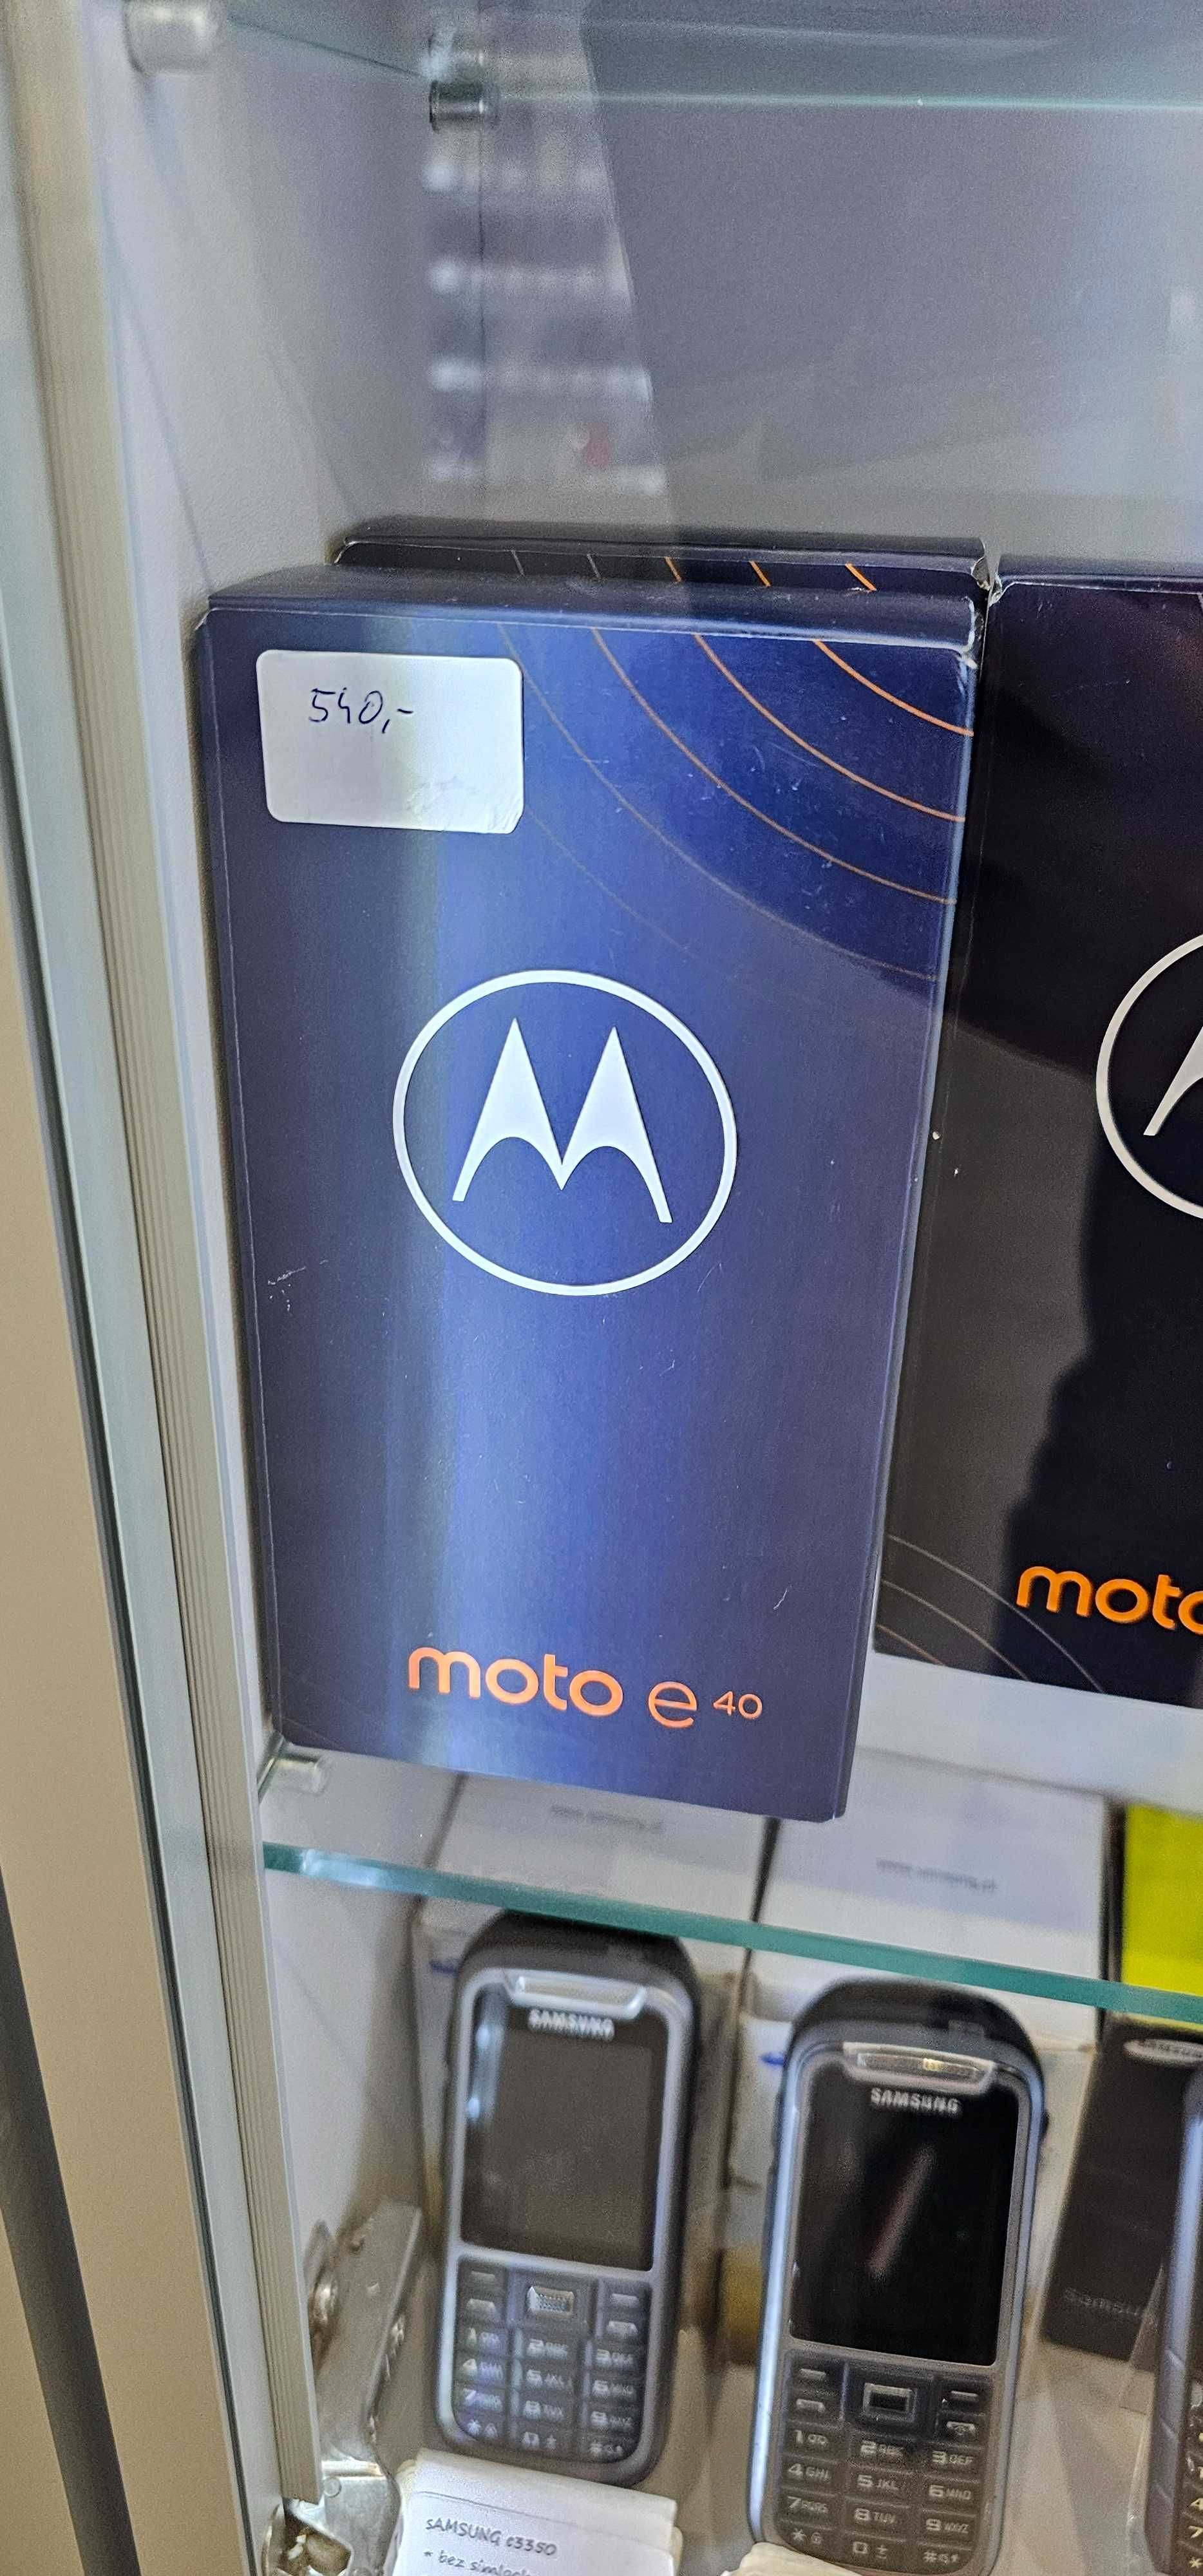 Nowa Motorola E40 komplet, gwarancja, sklep fv23%